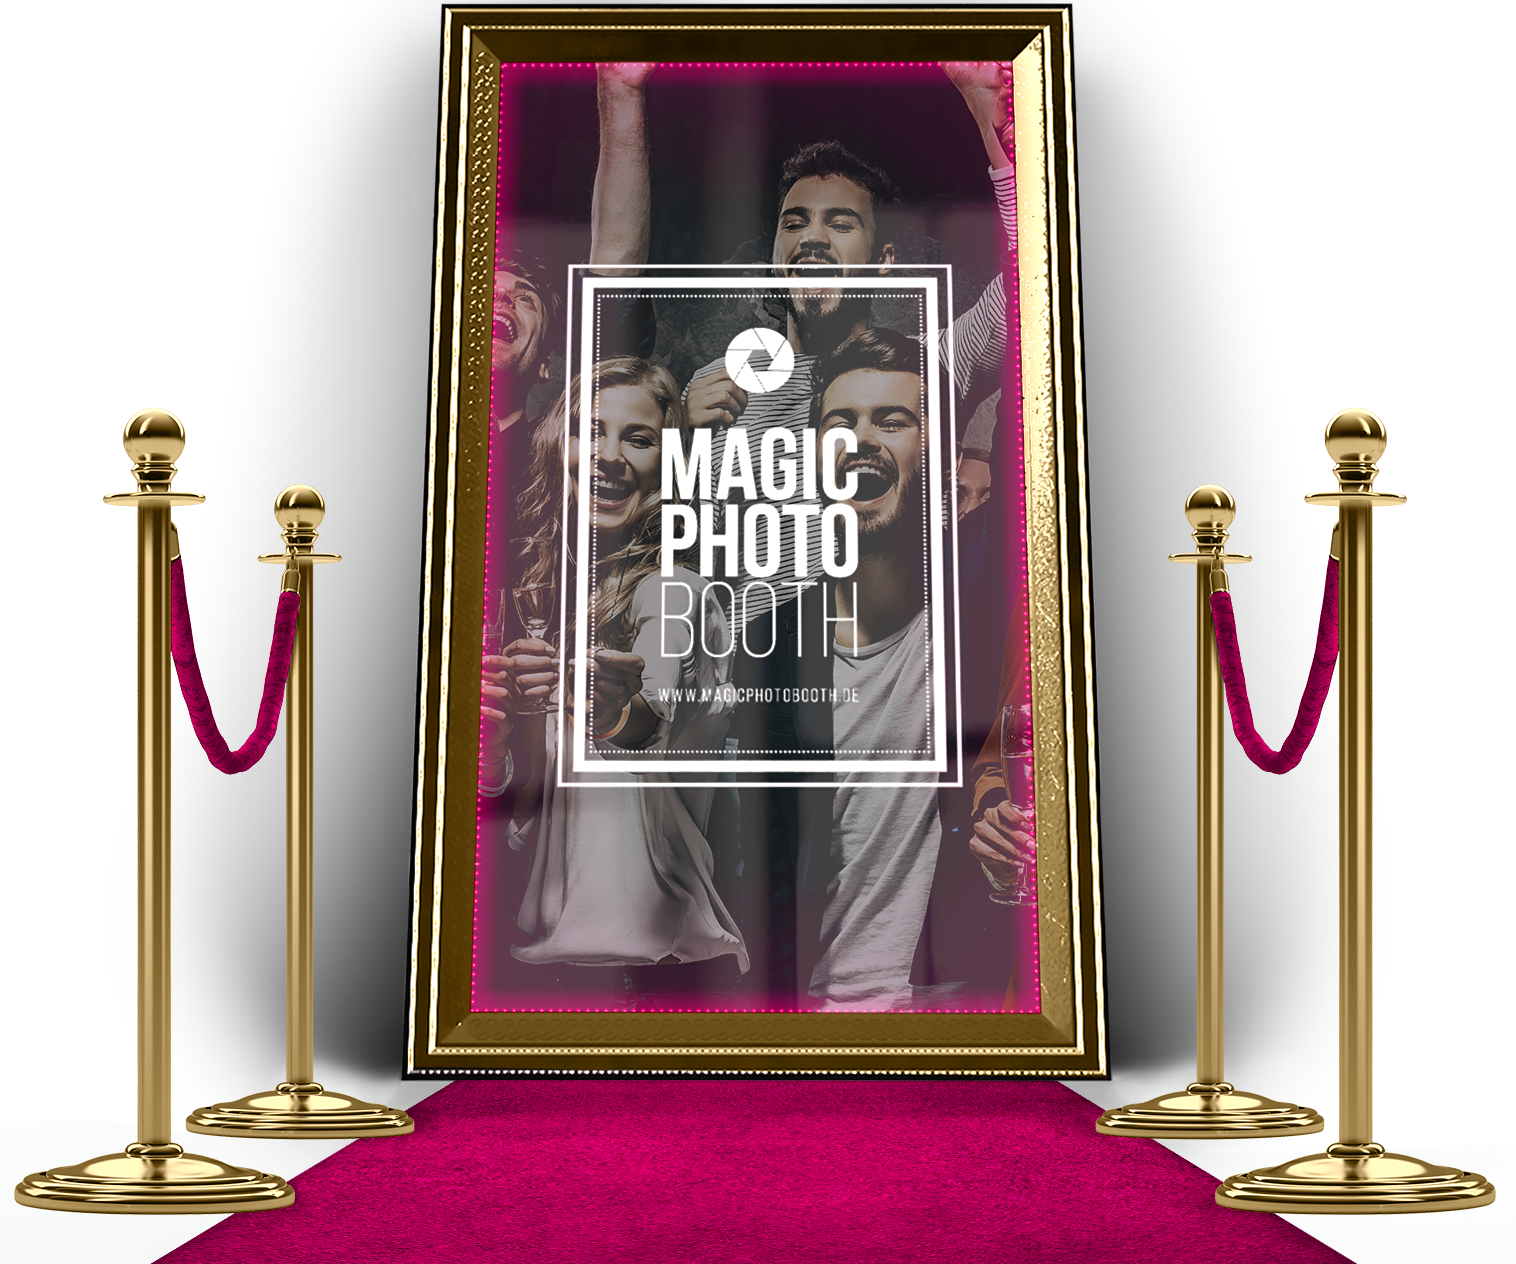 Magic Photo Booth – Die einzigartige Fotospiegelbox!